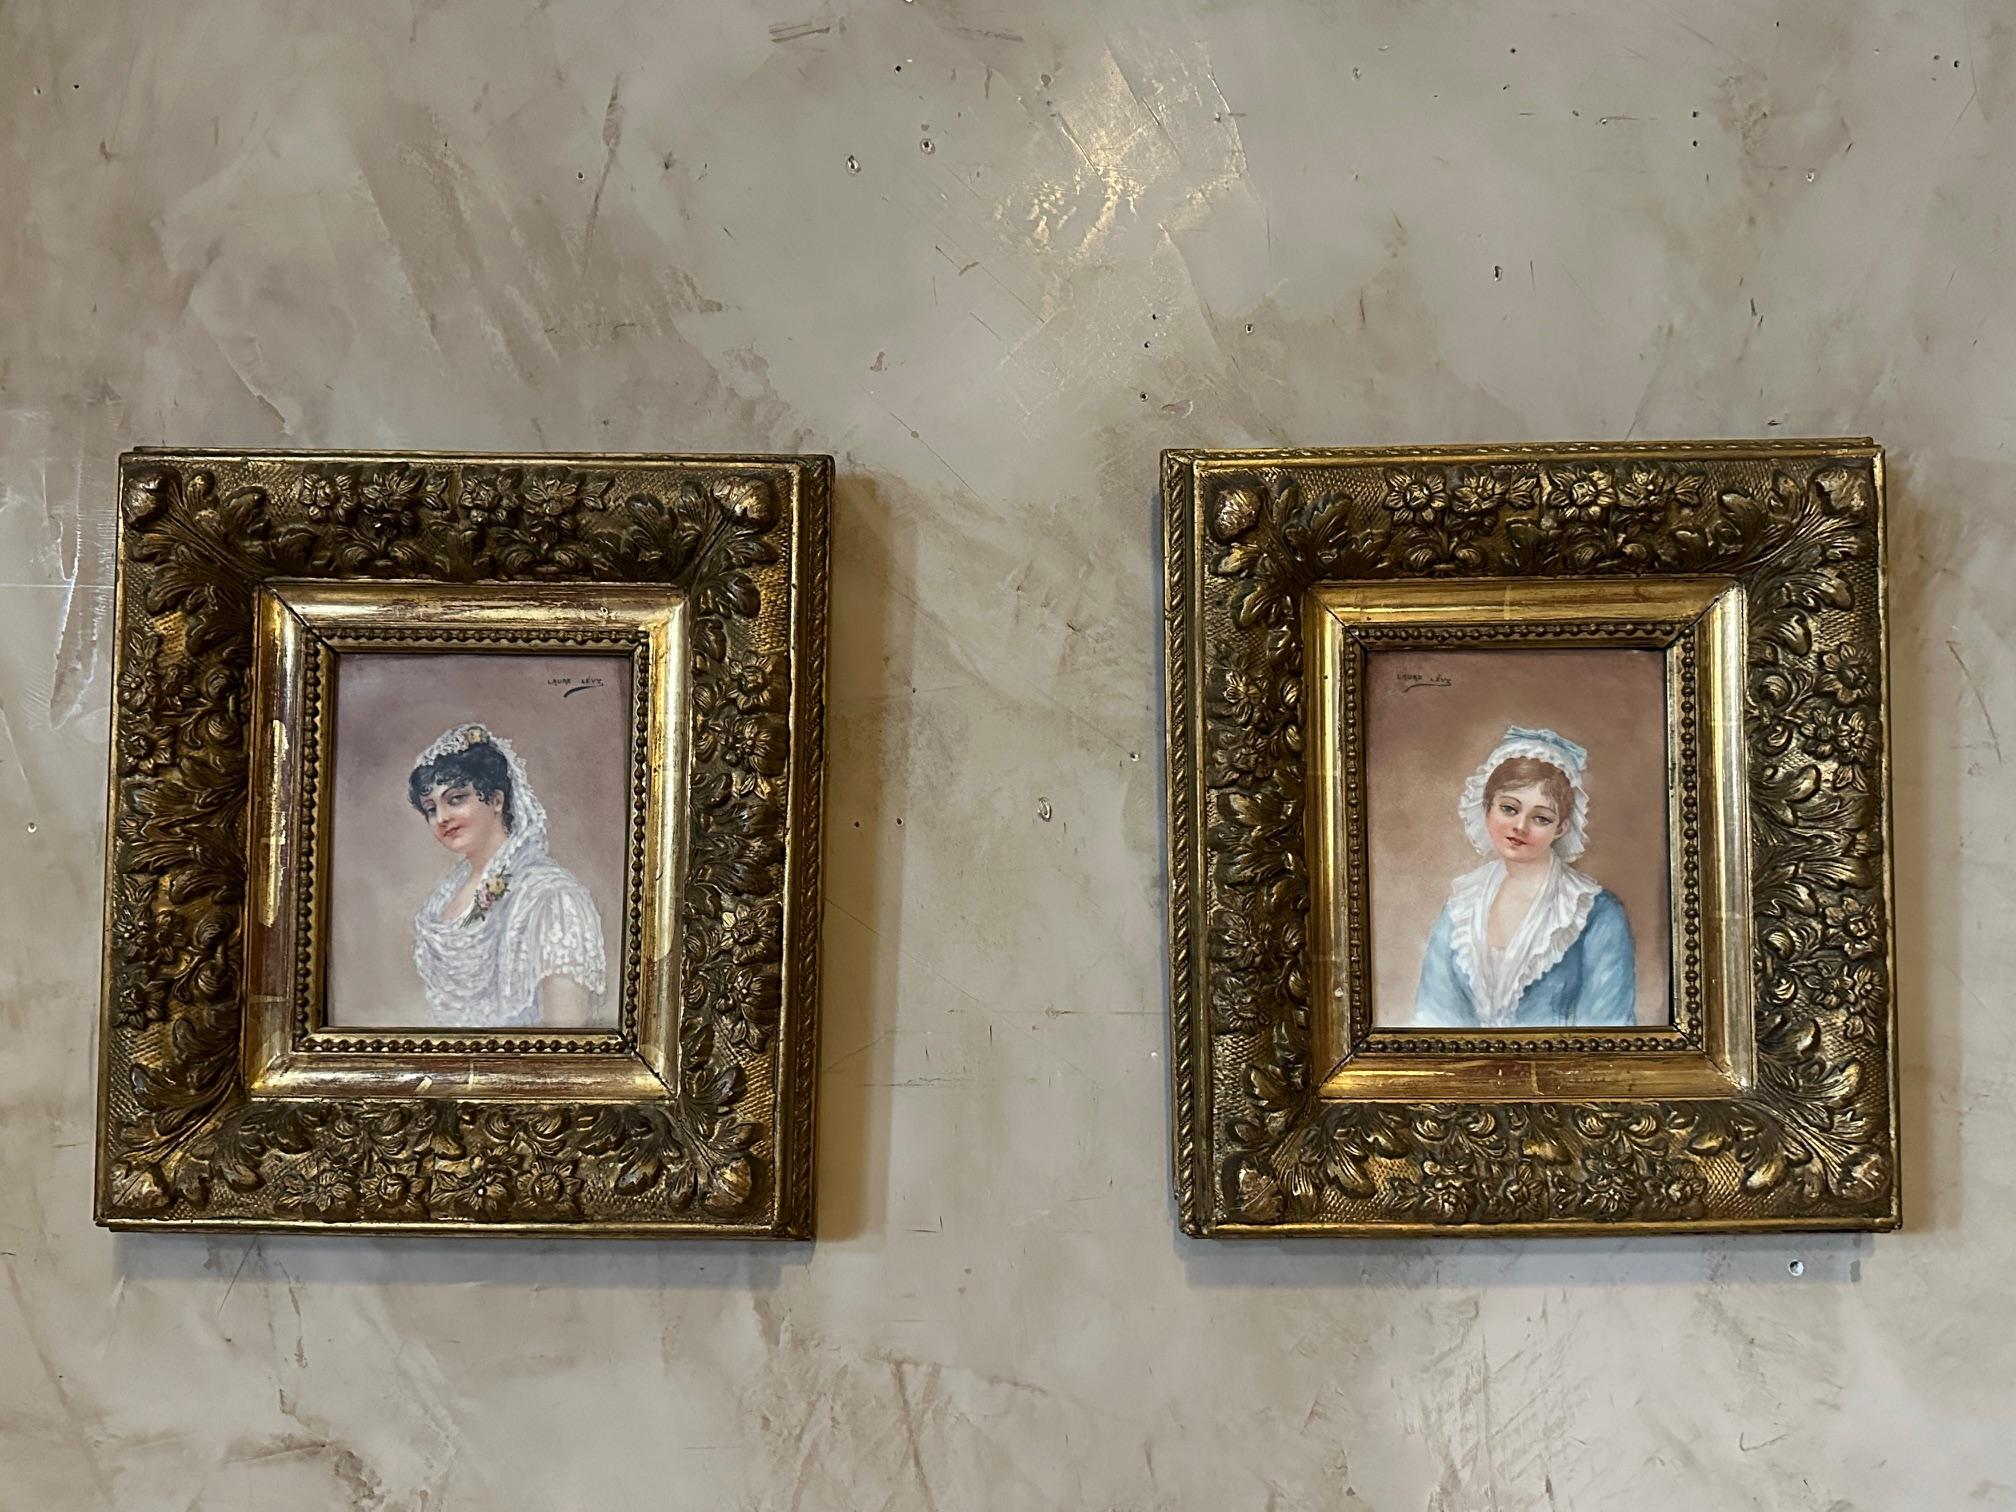 Paire de portraits à l'huile sur porcelaine datant du XIXe siècle signés par Laure Lévy représentant deux jeunes femmes. 
Magnifique cadre en bois doré.
Laure LEVY est une artiste née en France en 1866 et décédée en 1954.